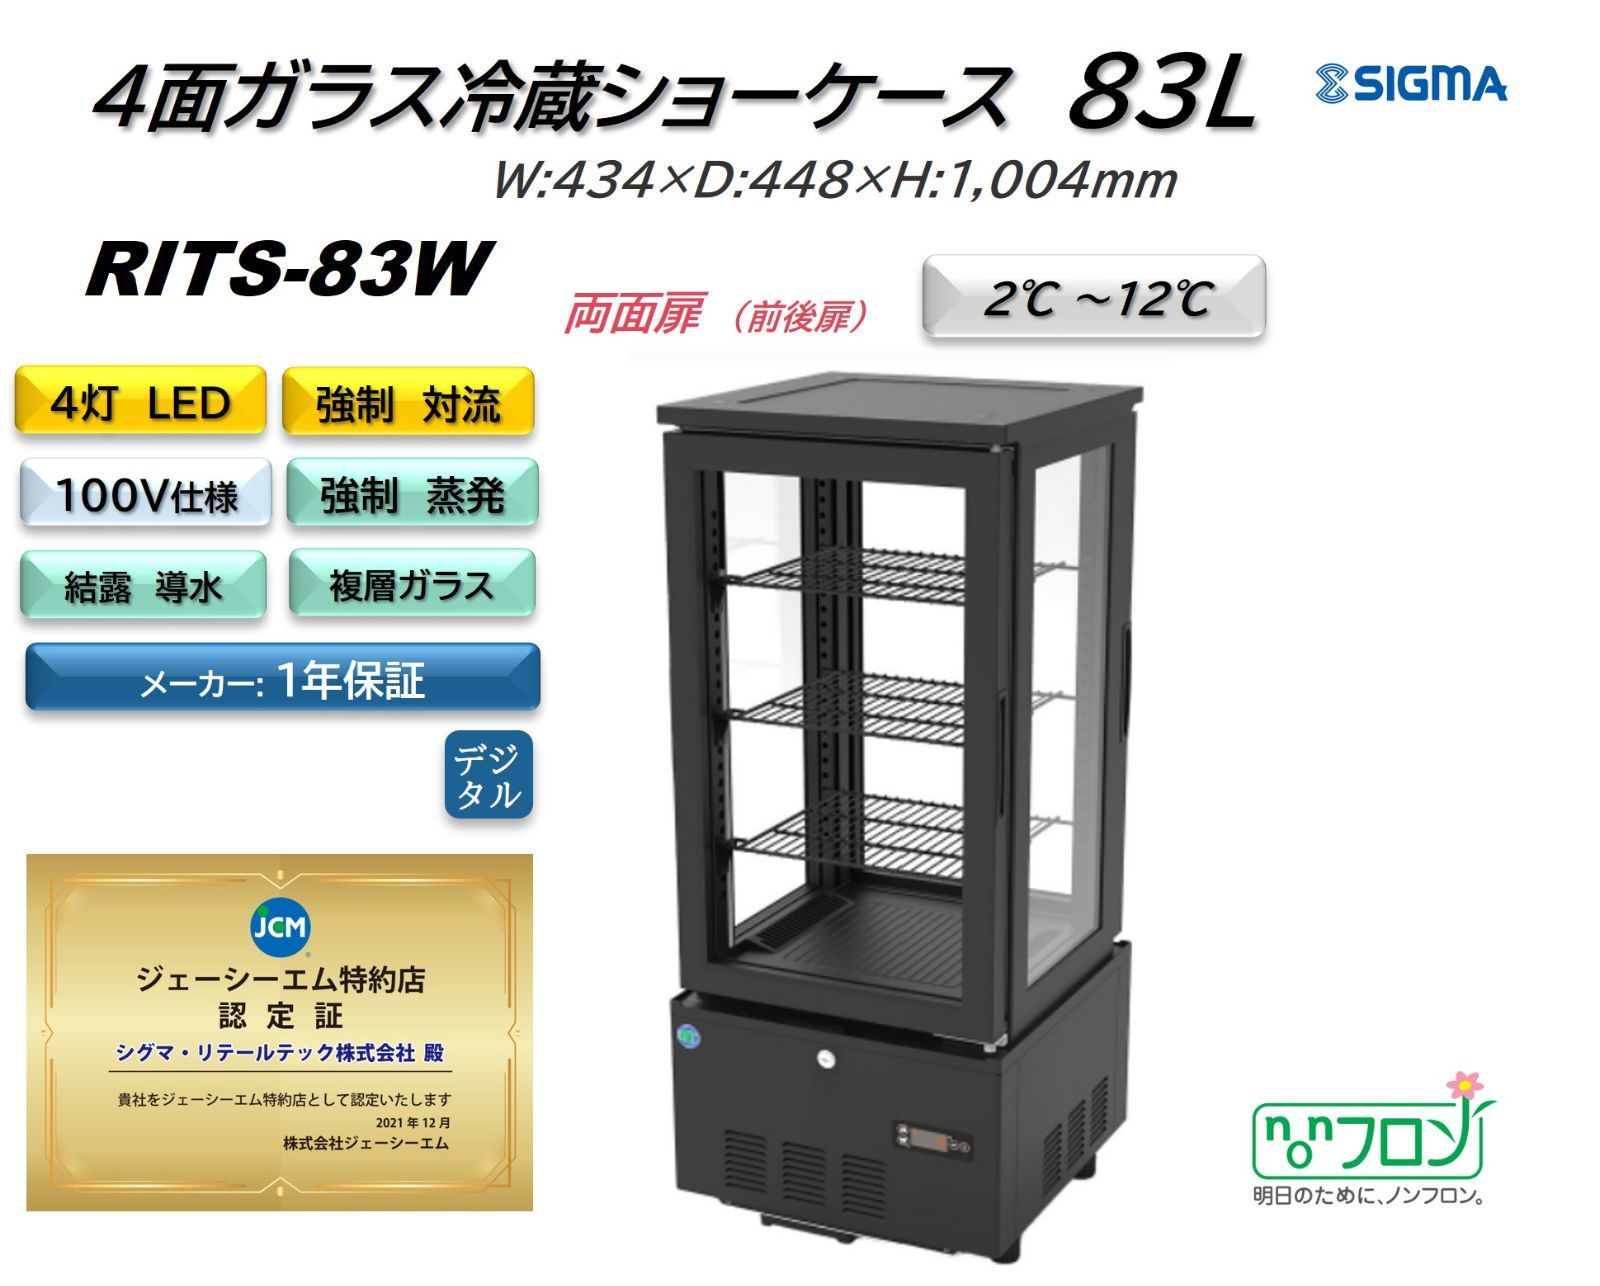 RITS-83W RIT 4面ガラス冷蔵ショーケース (両面扉)【新品】JCM シグマ・リテールテック株式会社 メルカリ